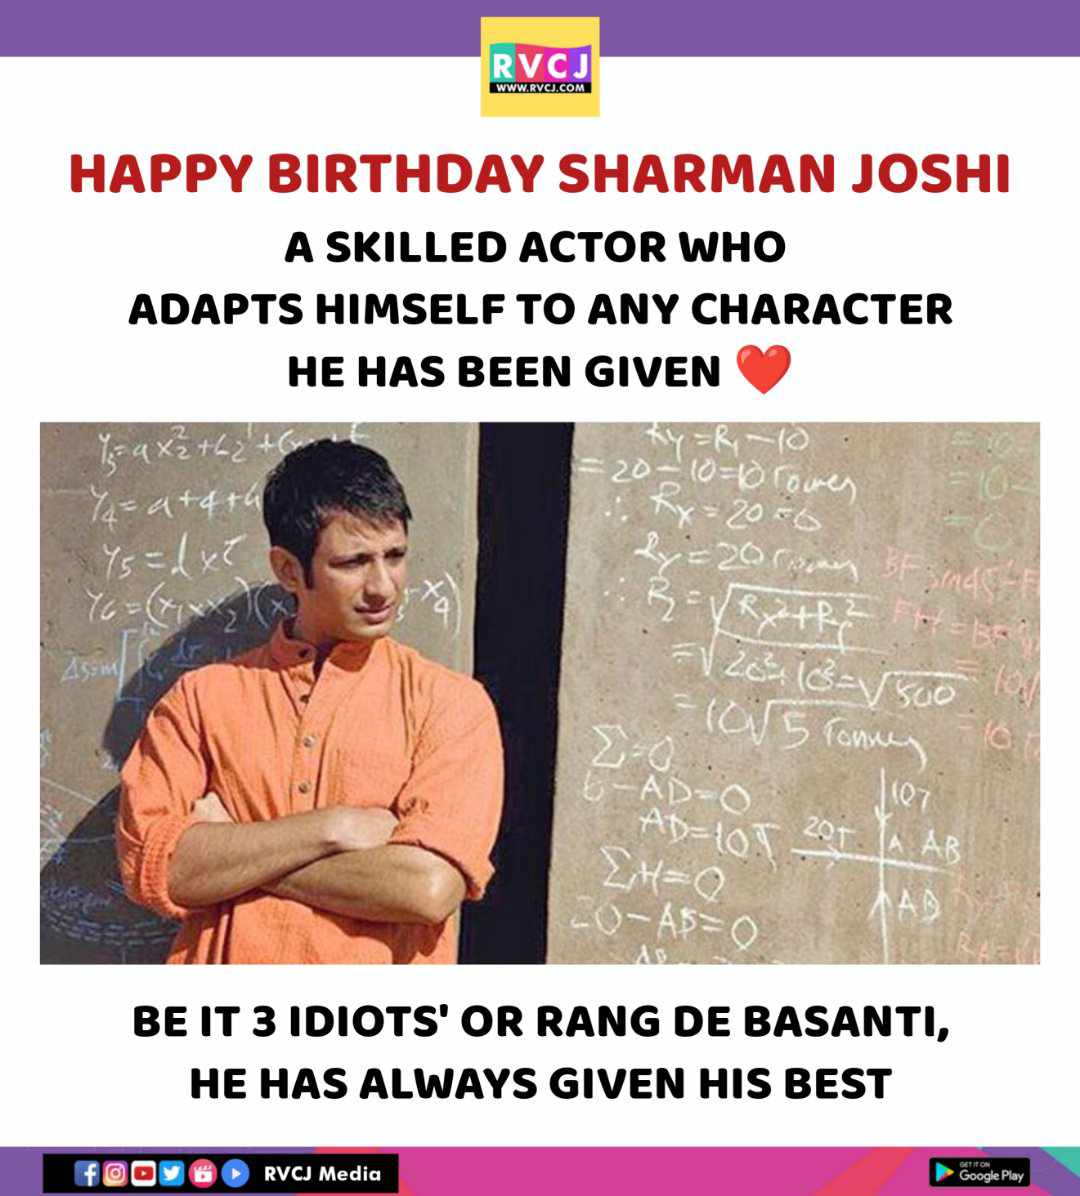 Happy Birthday Sharman Joshi

#sharmanjoshi